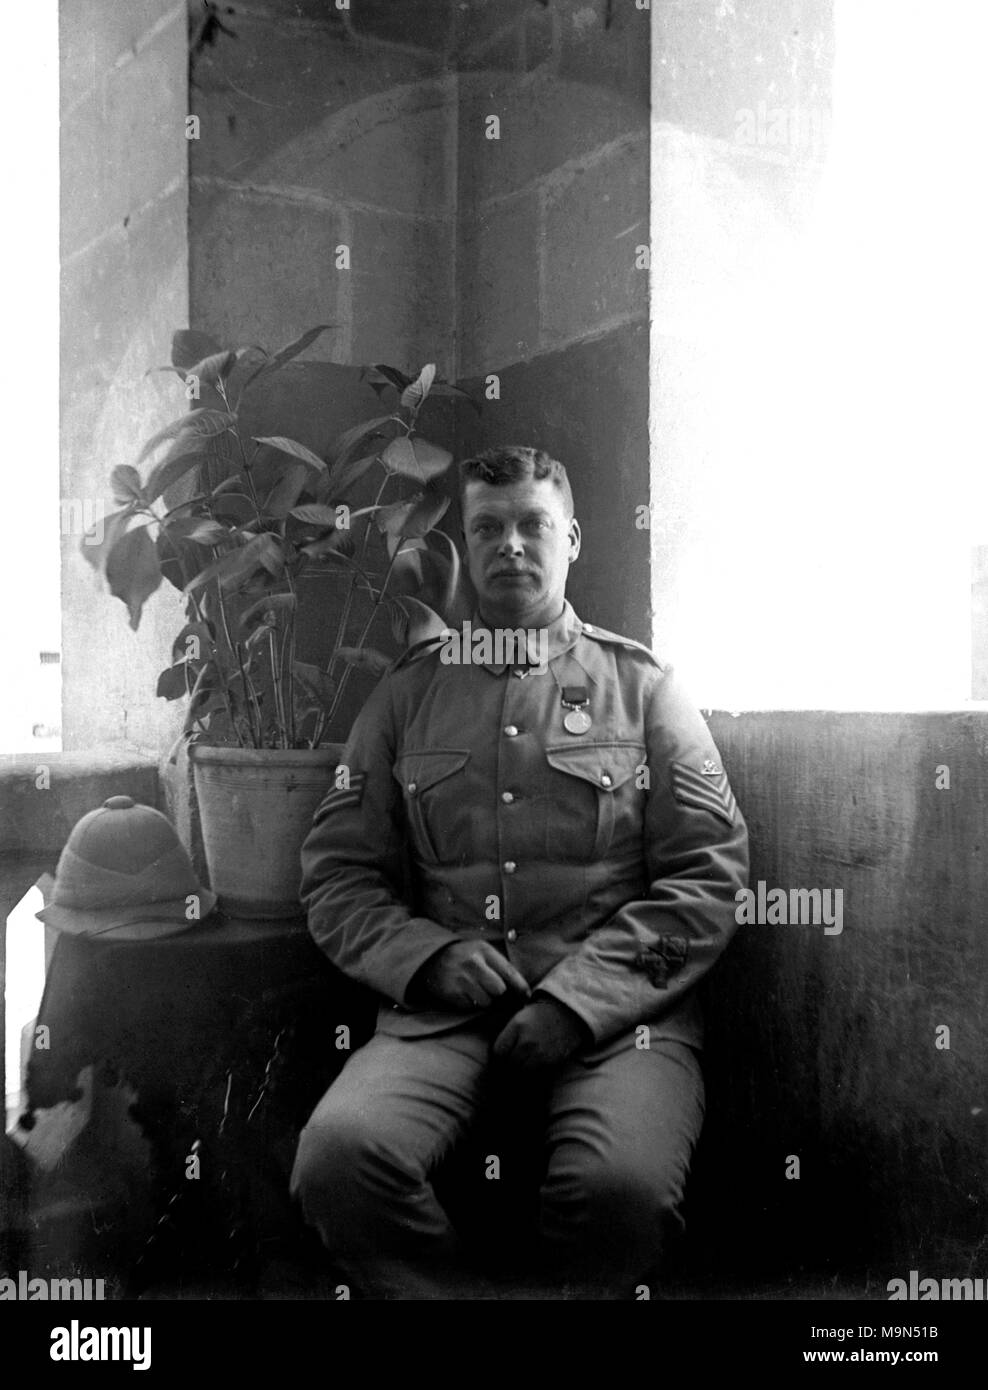 AJAXNETPHOTO. De 1914 à 1920. Emplacement inconnu. - PORTRAIT - le soldat de l'ARMÉE BRITANNIQUE QUI POSE EN UNIFORME POUR L'APPAREIL PHOTO. Photographe:Inconnu © COPYRIGHT DE L'IMAGE NUMÉRIQUE PHOTO VINTAGE AJAX AJAX BIBLIOTHÈQUE SOURCE : VINTAGE PHOTO LIBRARY COLLECTION REF:182303 07 Banque D'Images